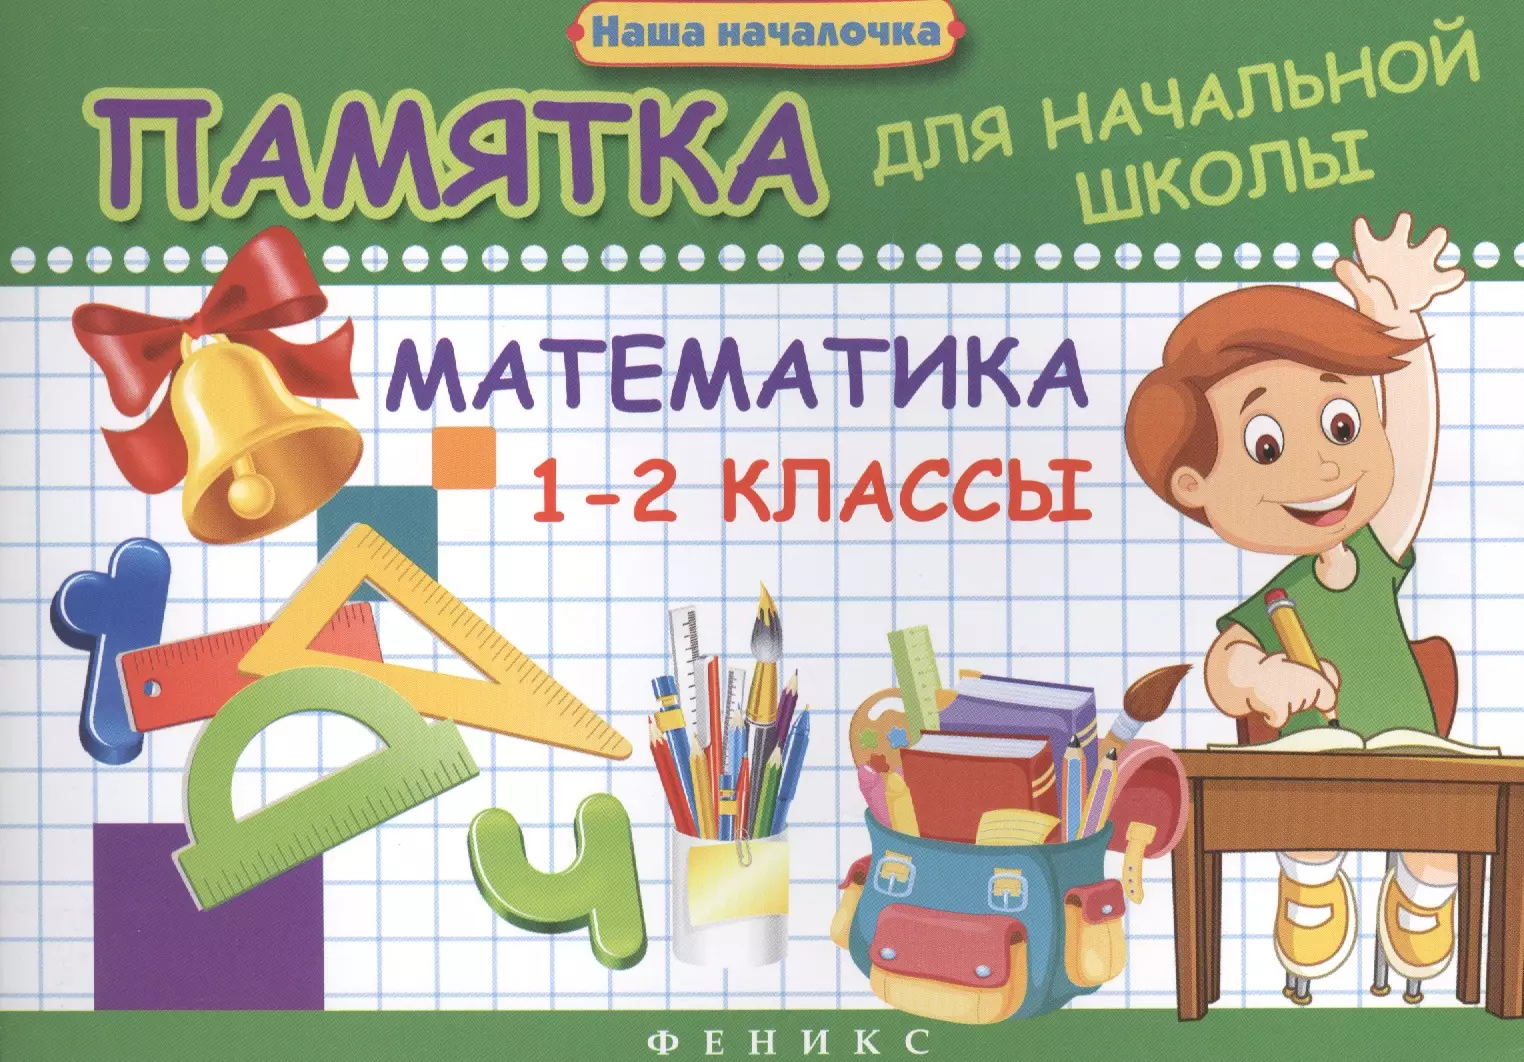 Матекина Эмма Иосифовна - Математика. 1-2 классы : памятка для начальной школы